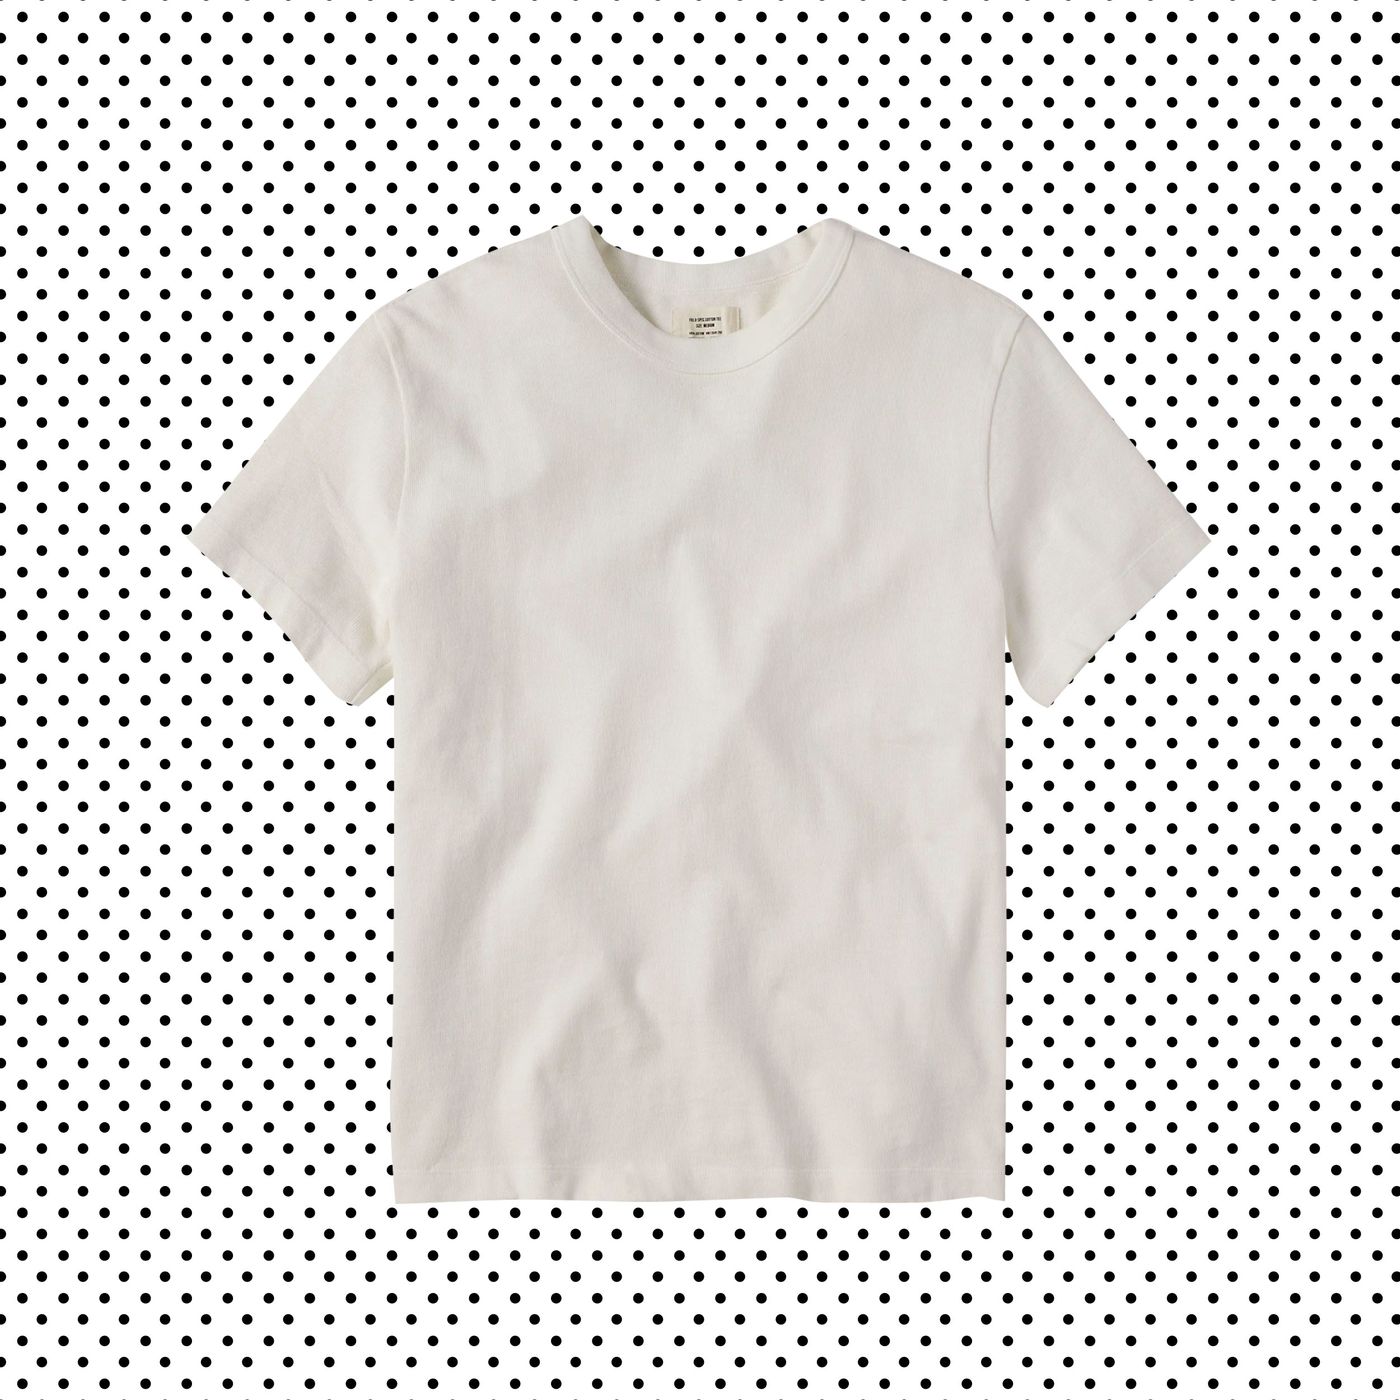 Plain white t shirt for men